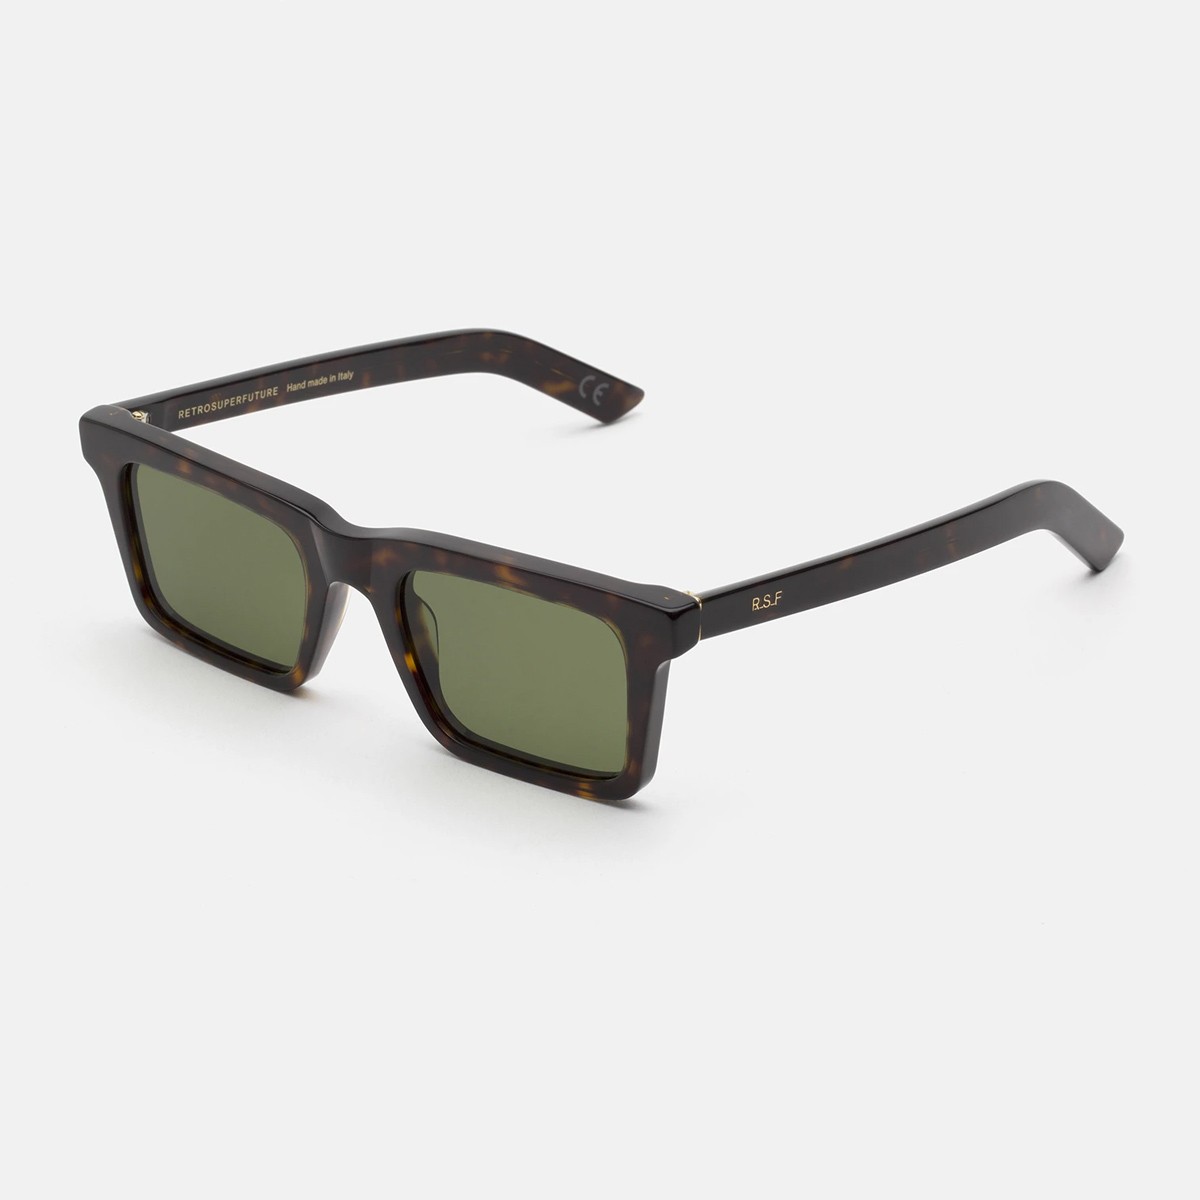 Super 1968 3627 | Unisex sunglasses